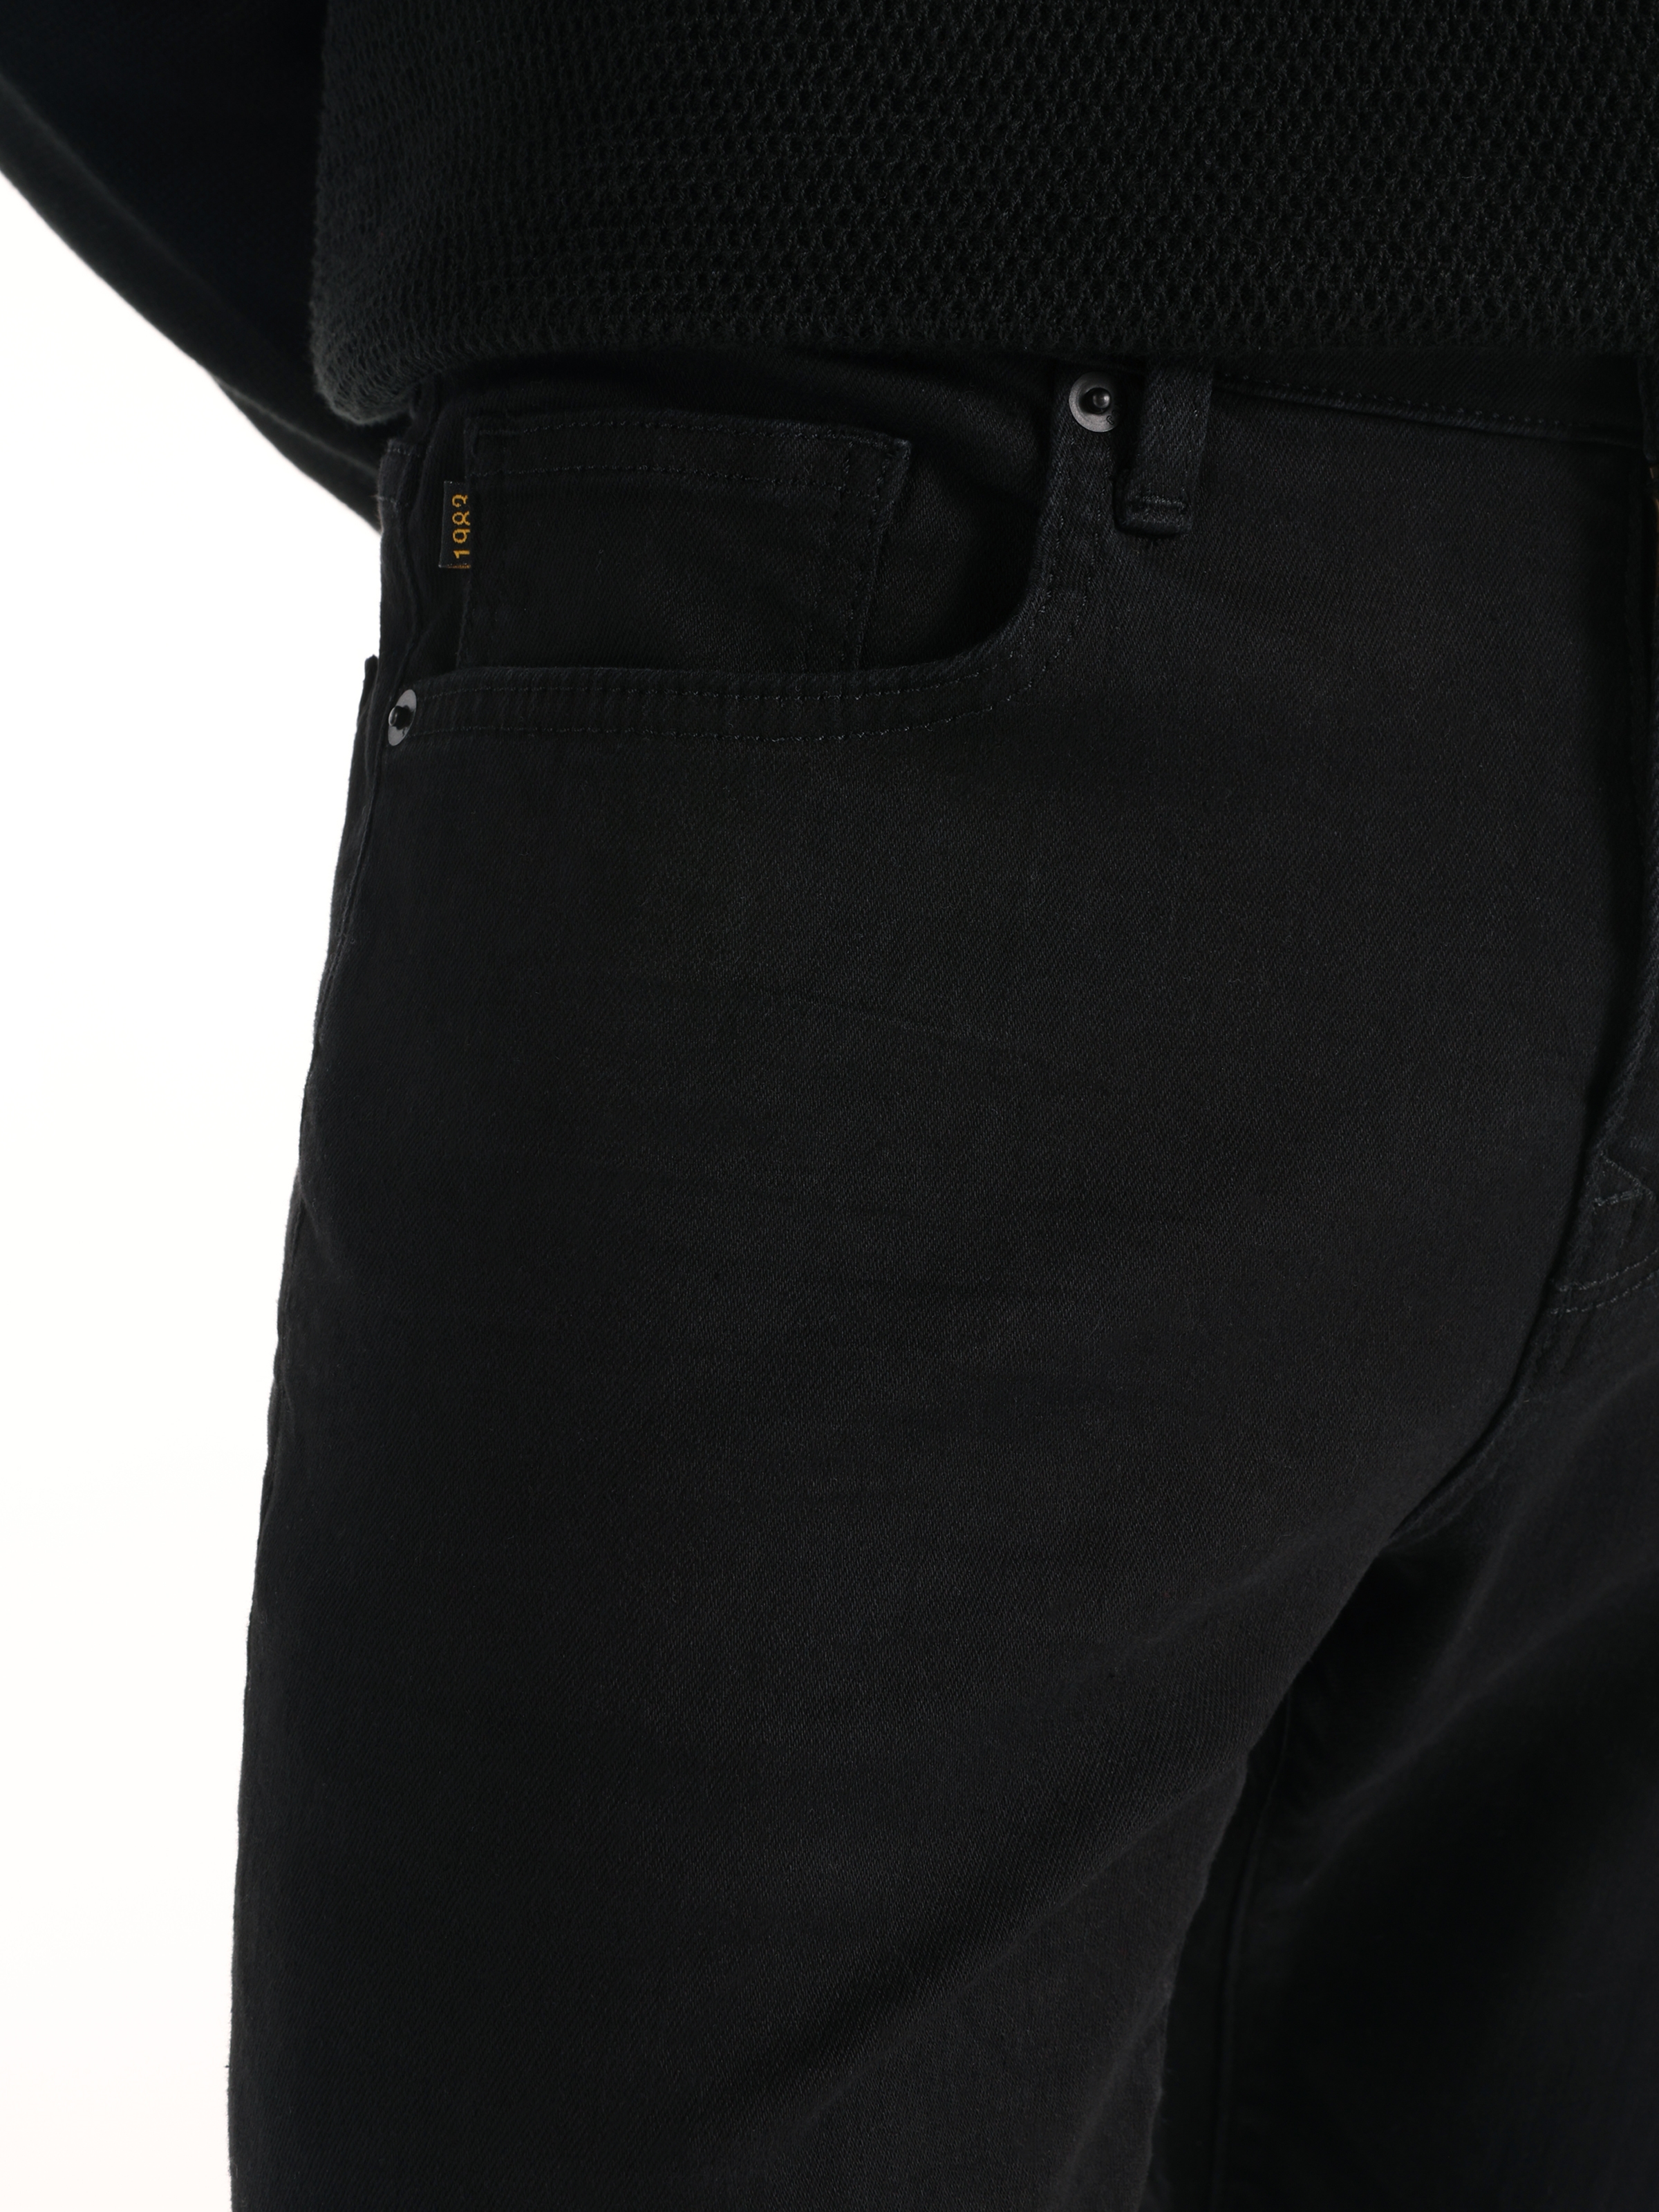 اعرض التفاصيل لـ 041 داني بنطلون جينز ضيق بخصر منخفض وساق ضيقة باللون الأسود للرجال